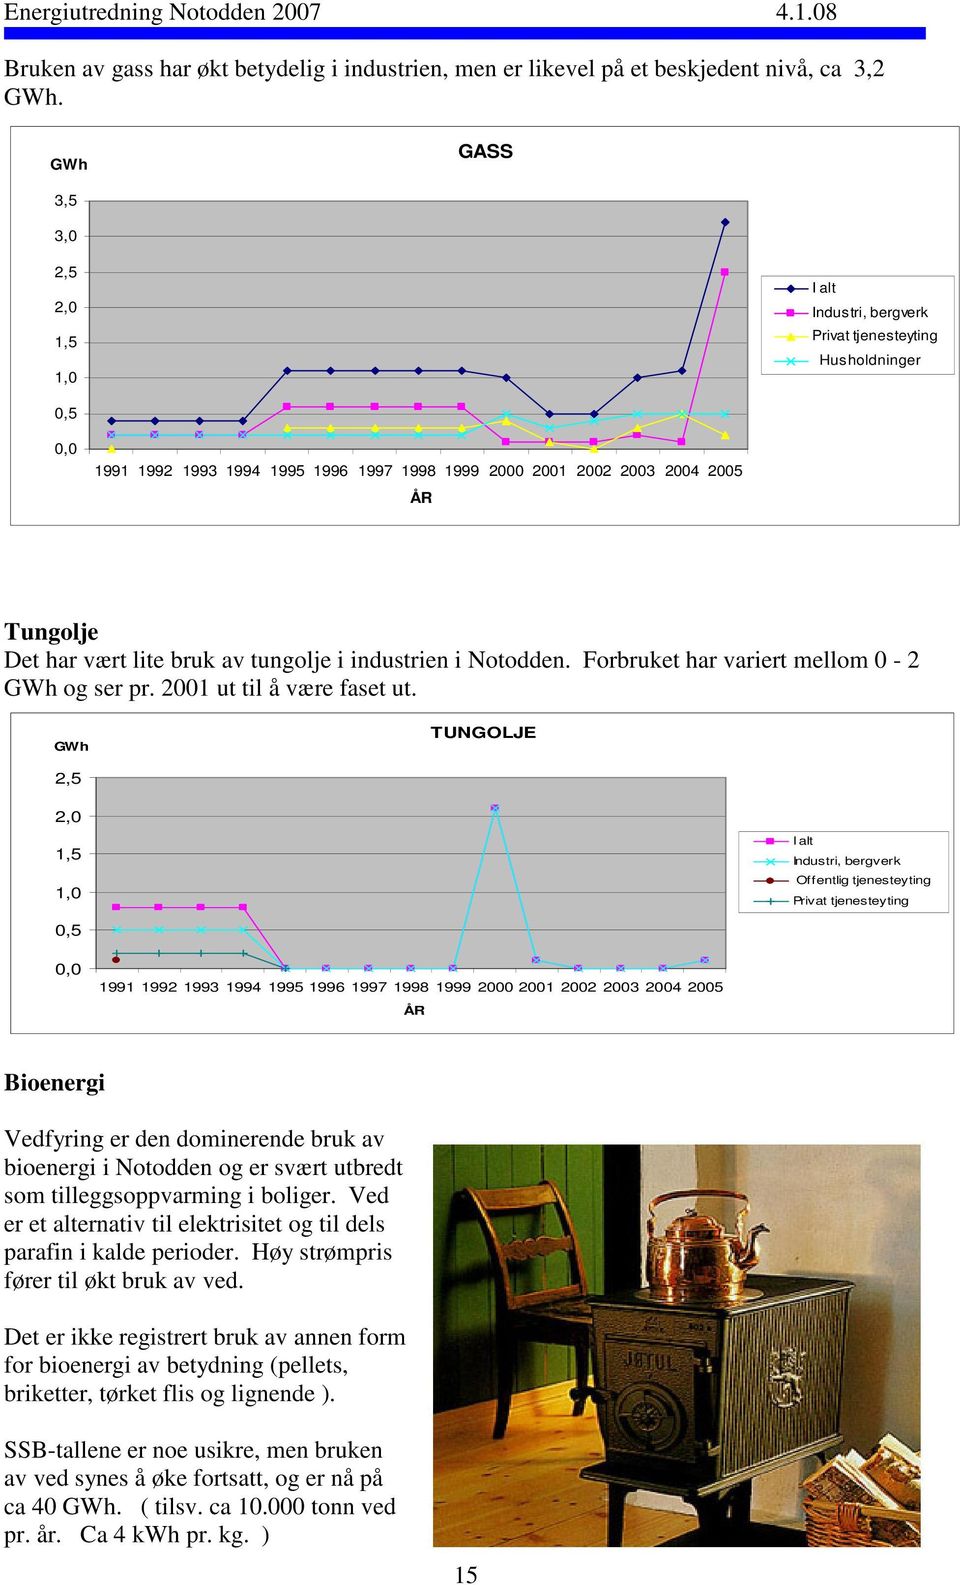 vært lite bruk av tungolje i industrien i Notodden. Forbruket har variert mellom 0-2 GWh og ser pr. 2001 ut til å være faset ut.